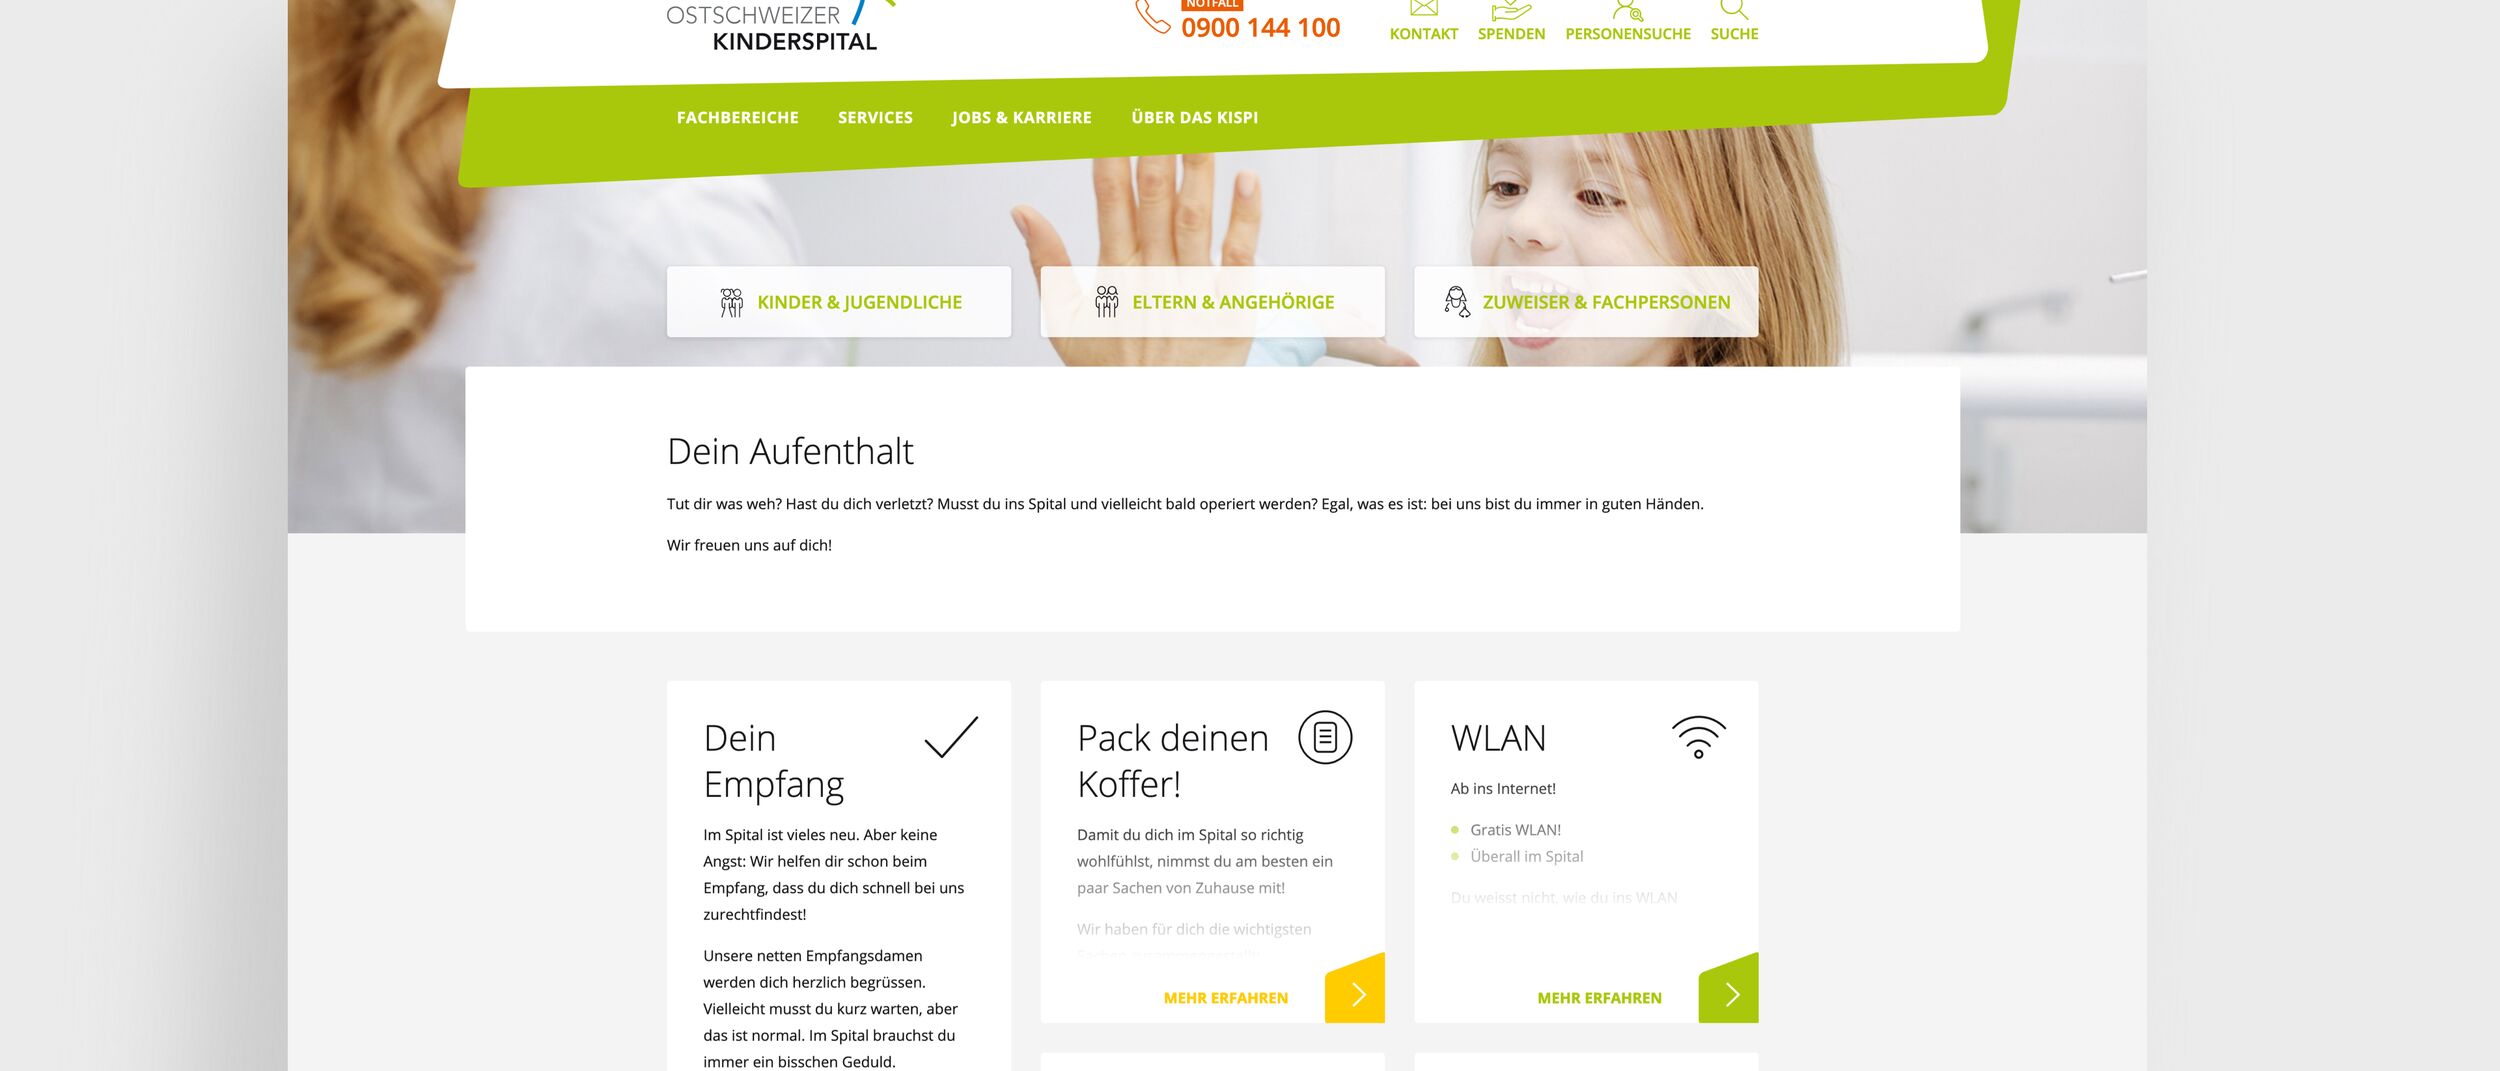 Ostschweizer Kinderspital - Webseite